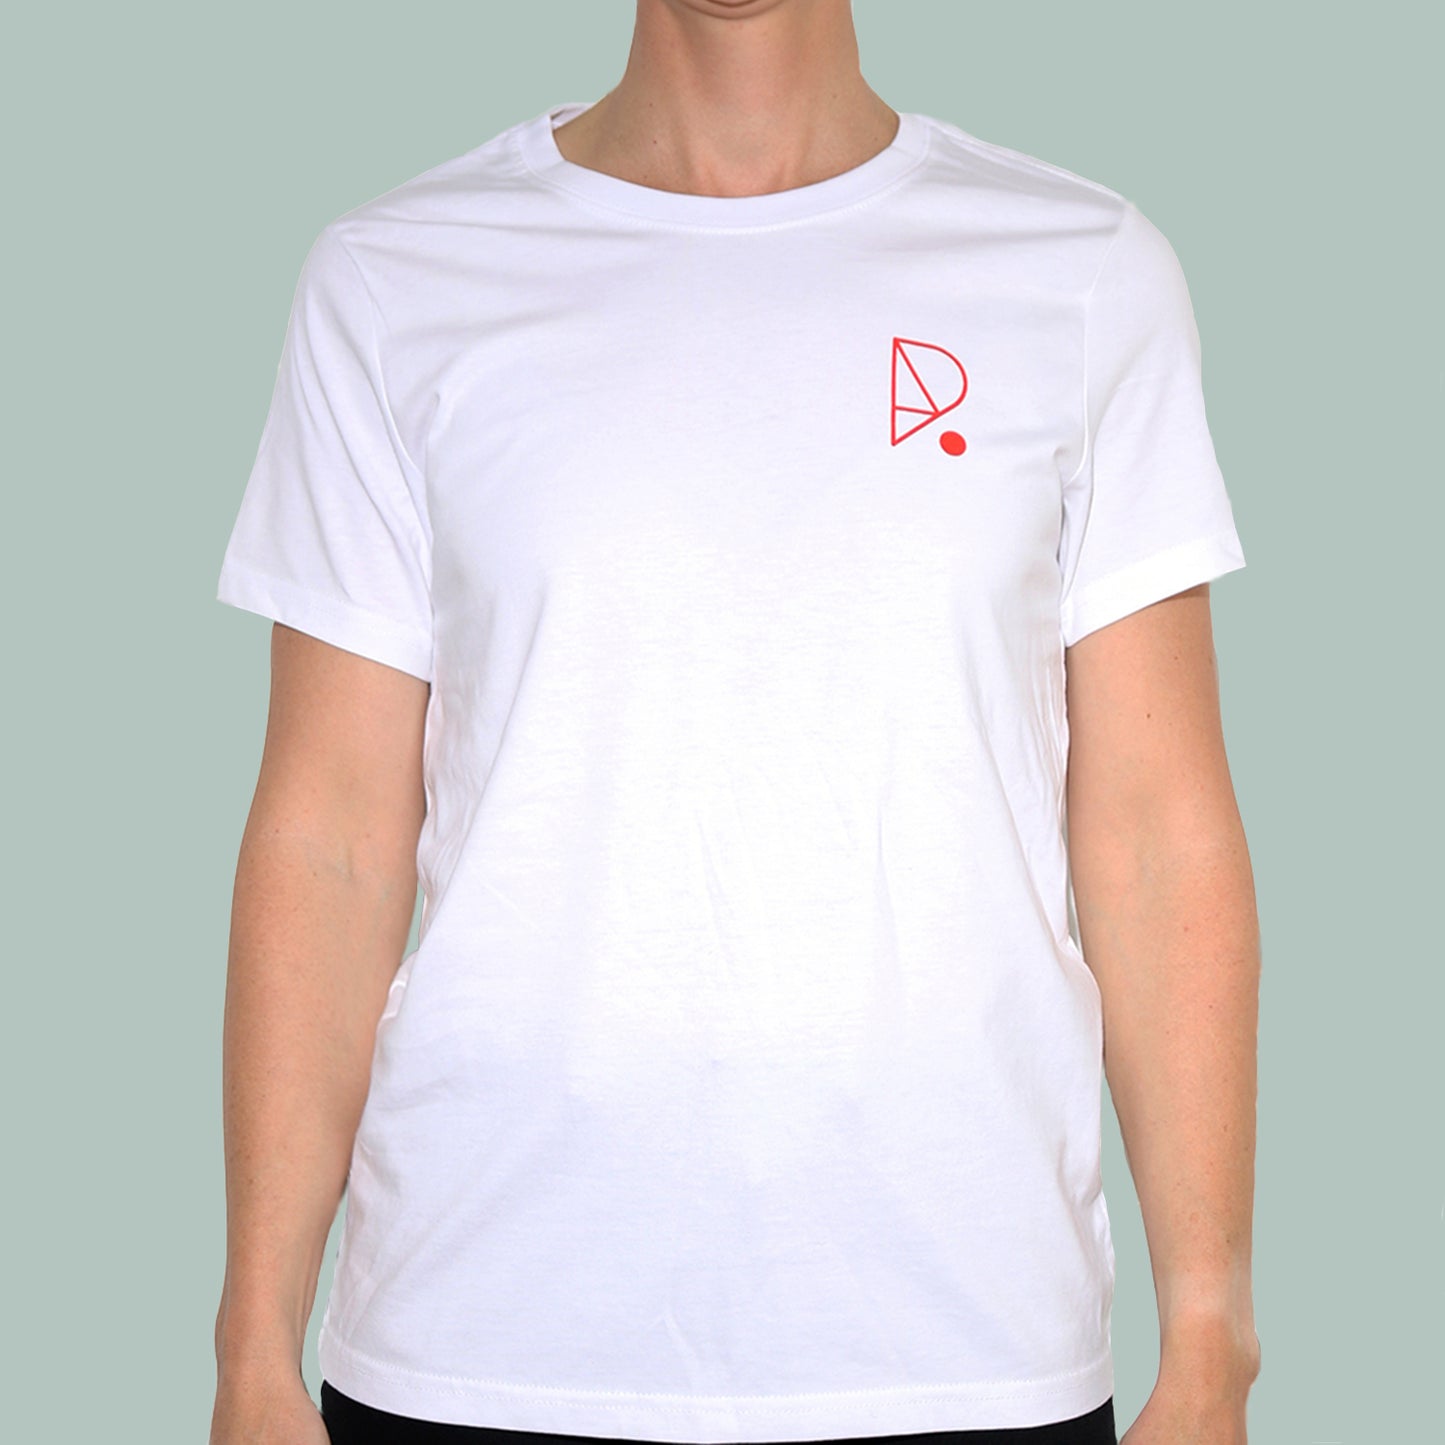 Unisex Teeshirt - White (Organic)